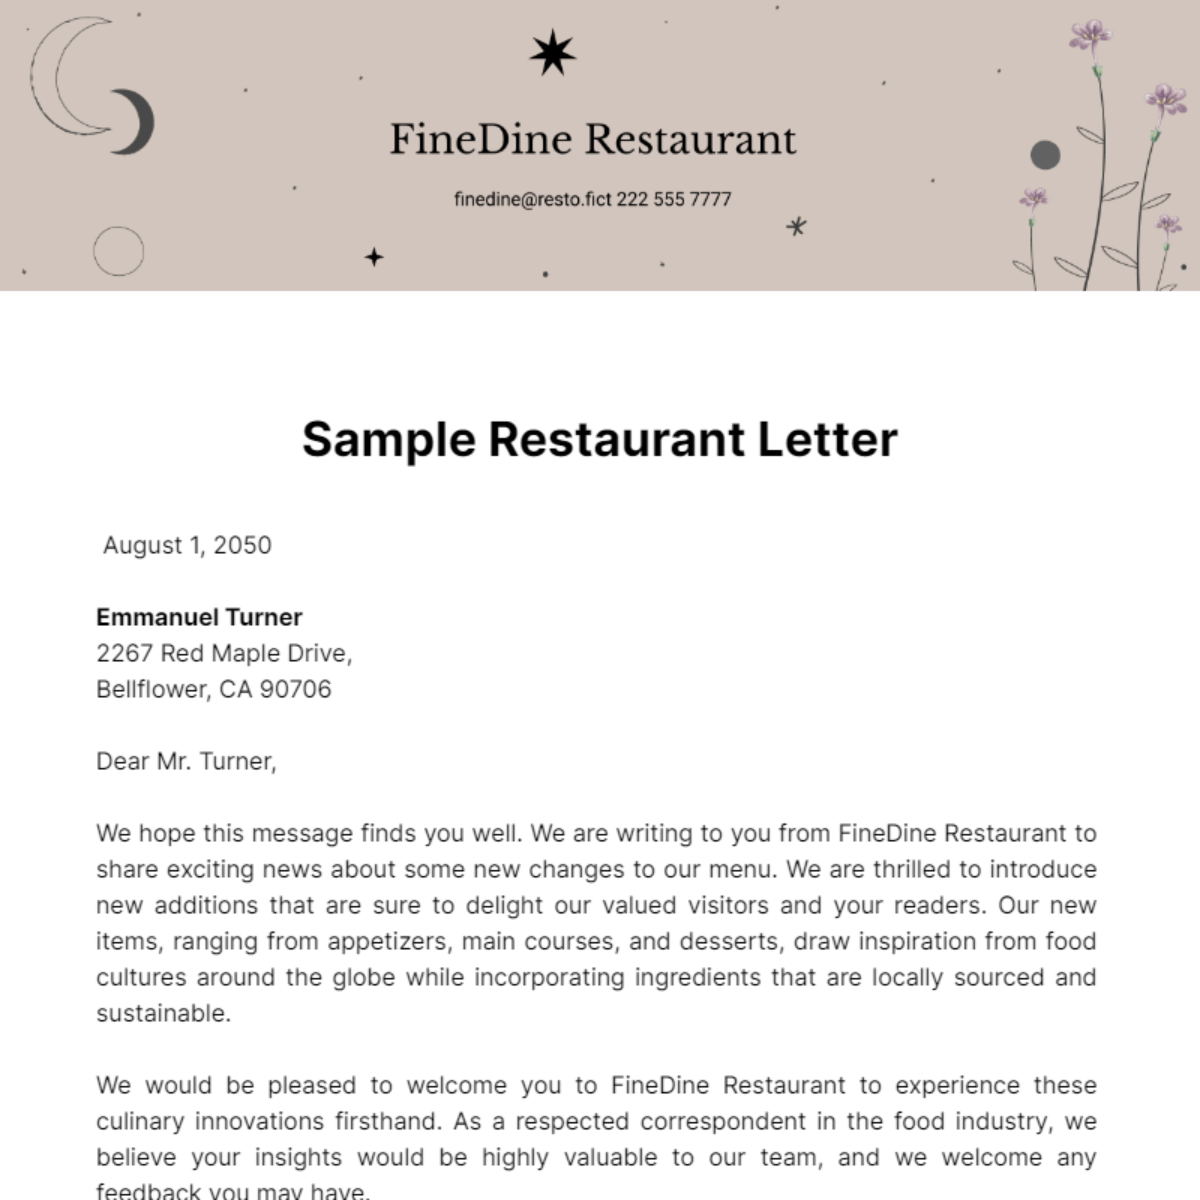 Sample Restaurant Letter Template